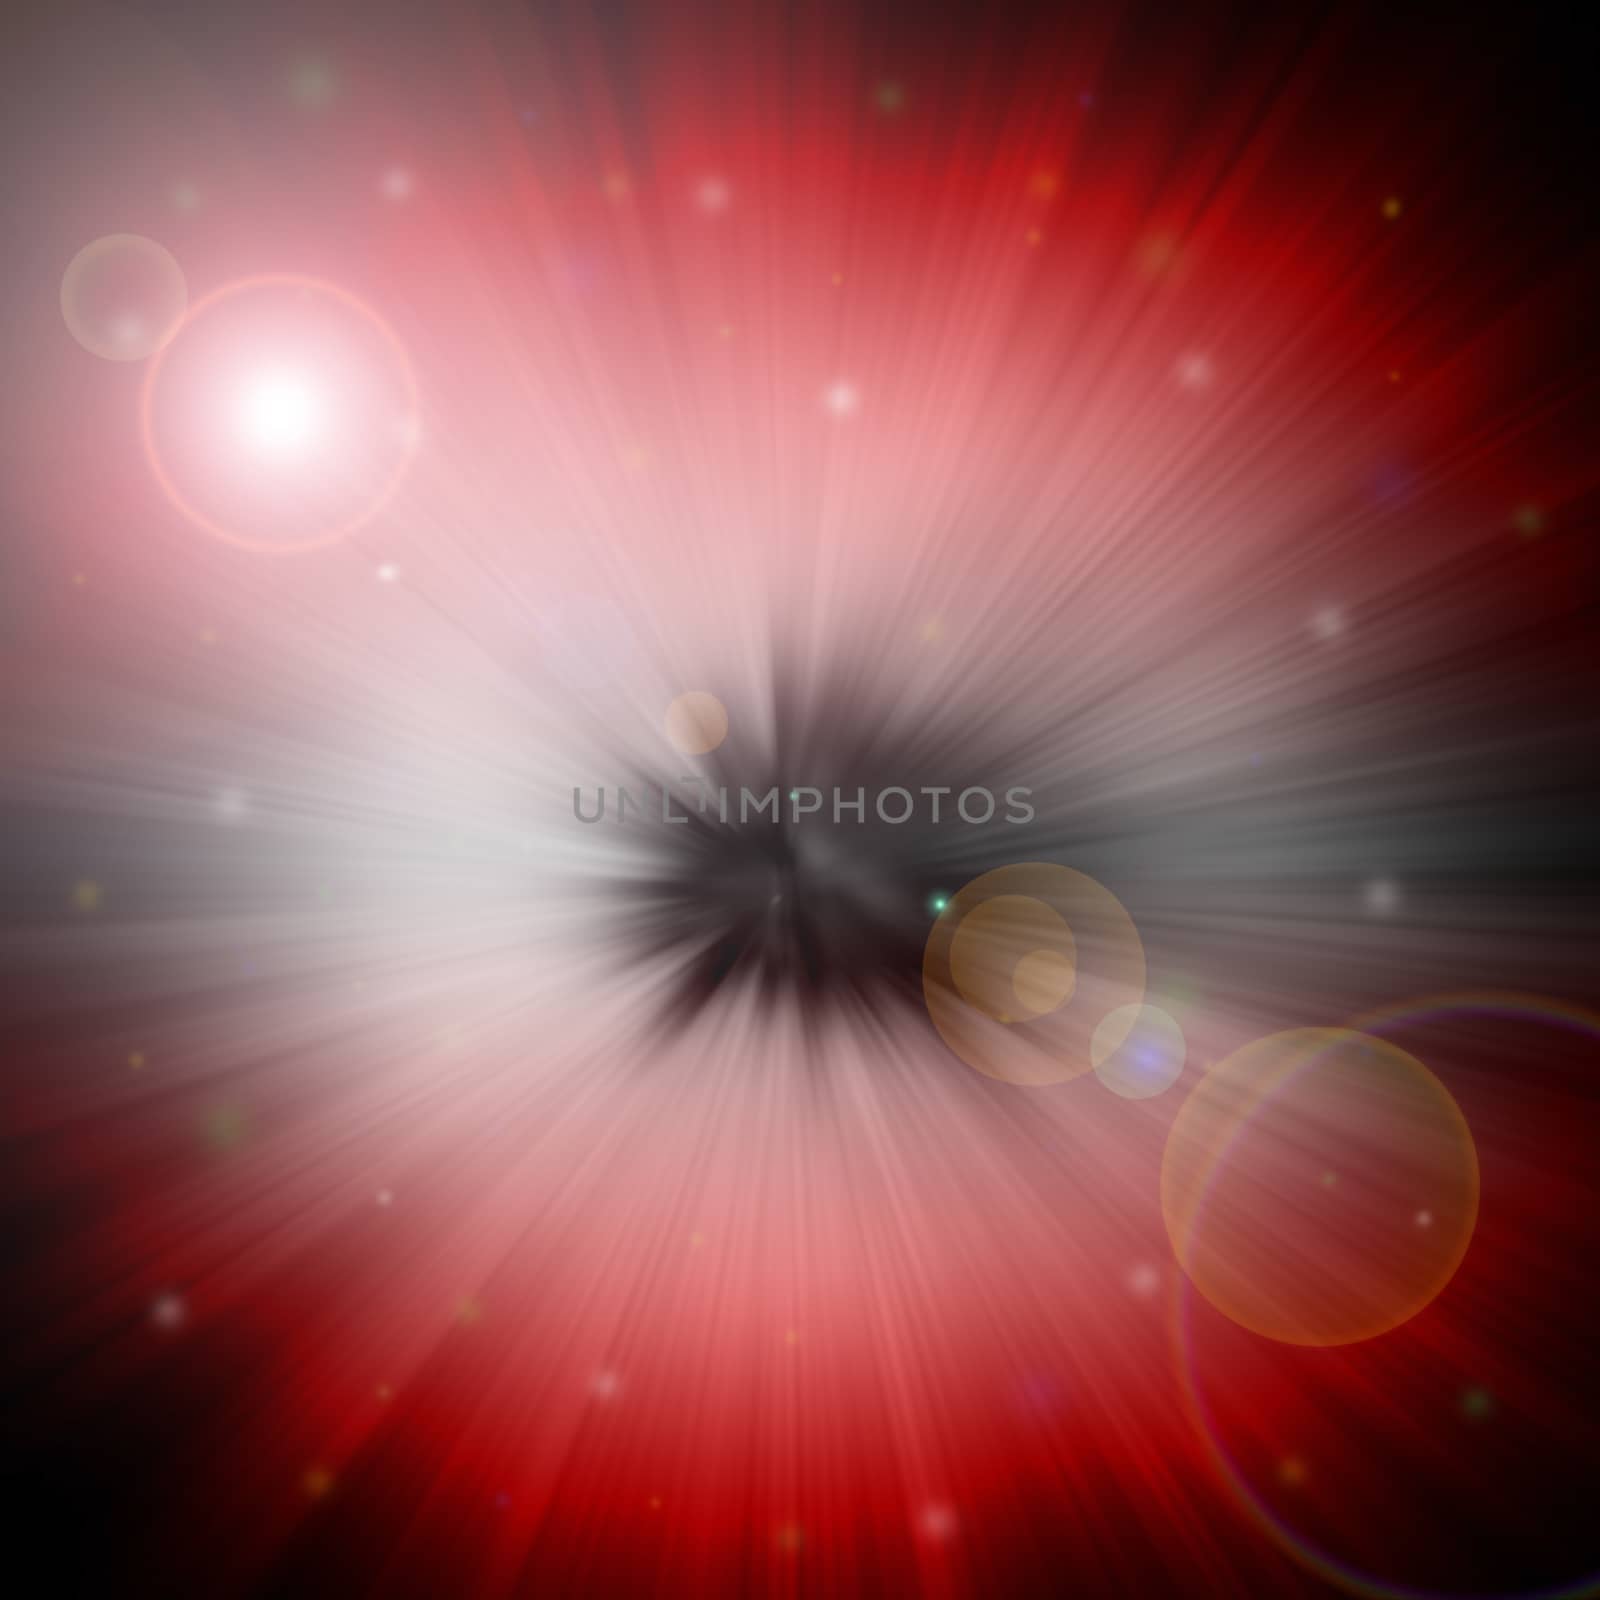 red star flash, on a dark background